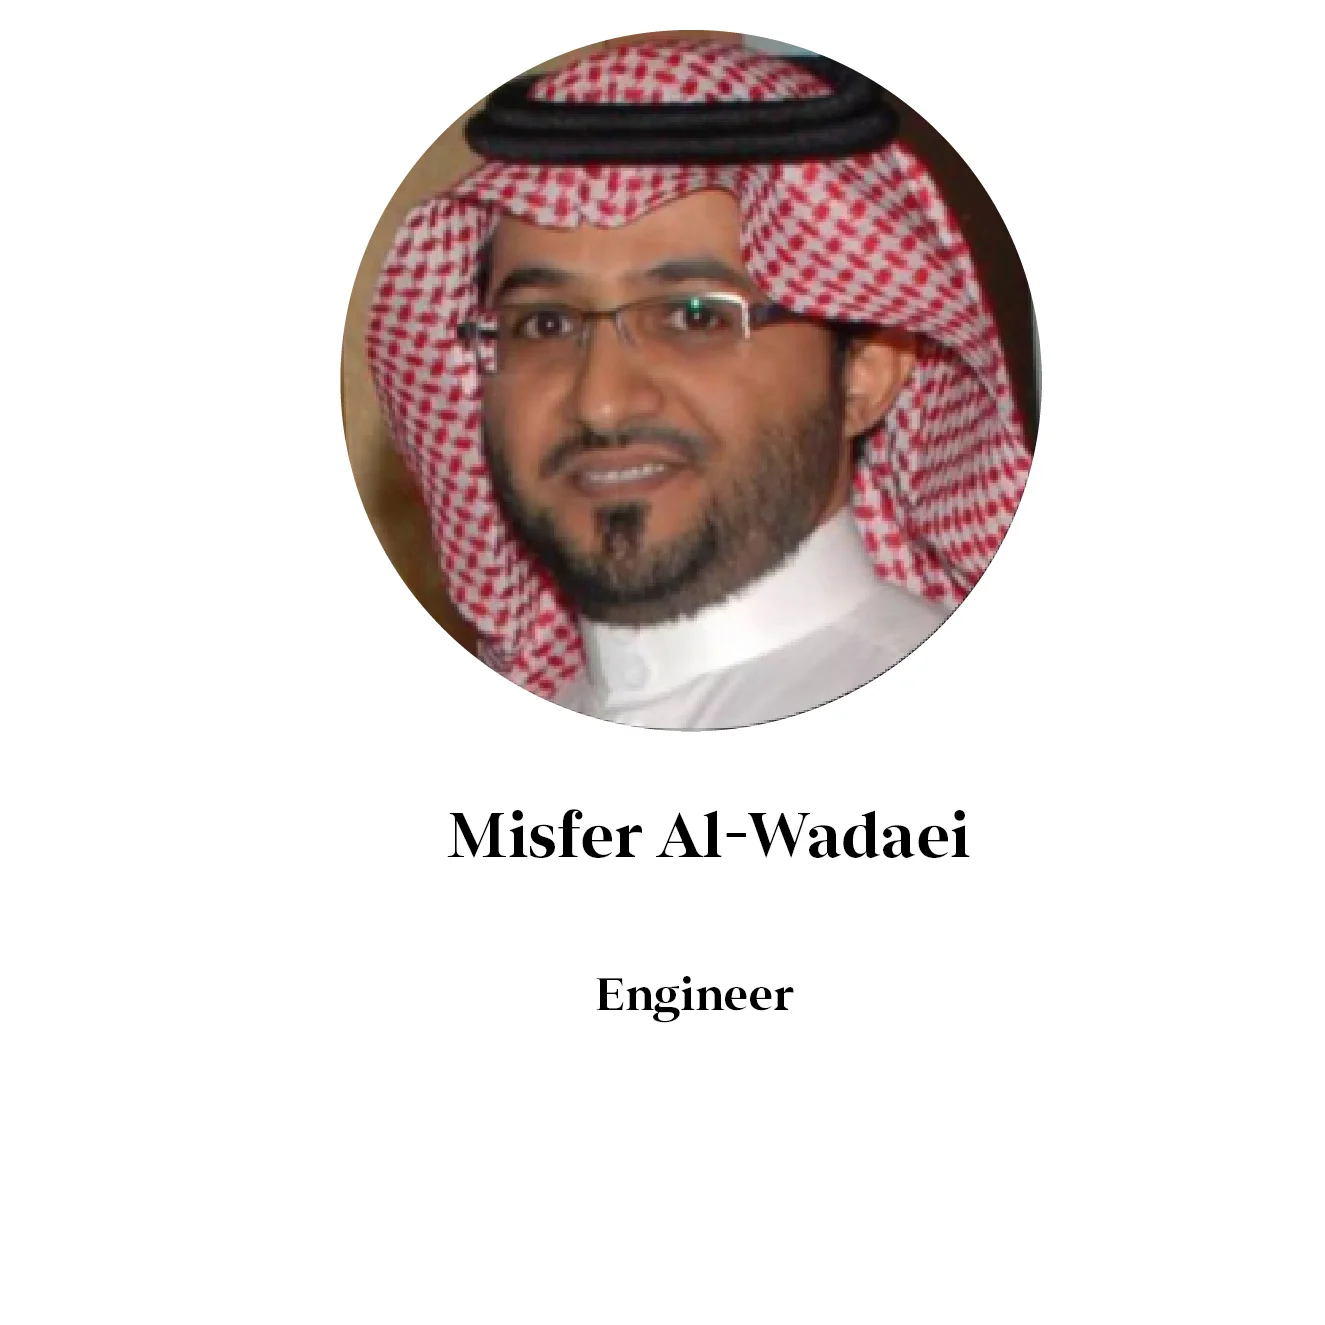 Misfer Al-Wadaei